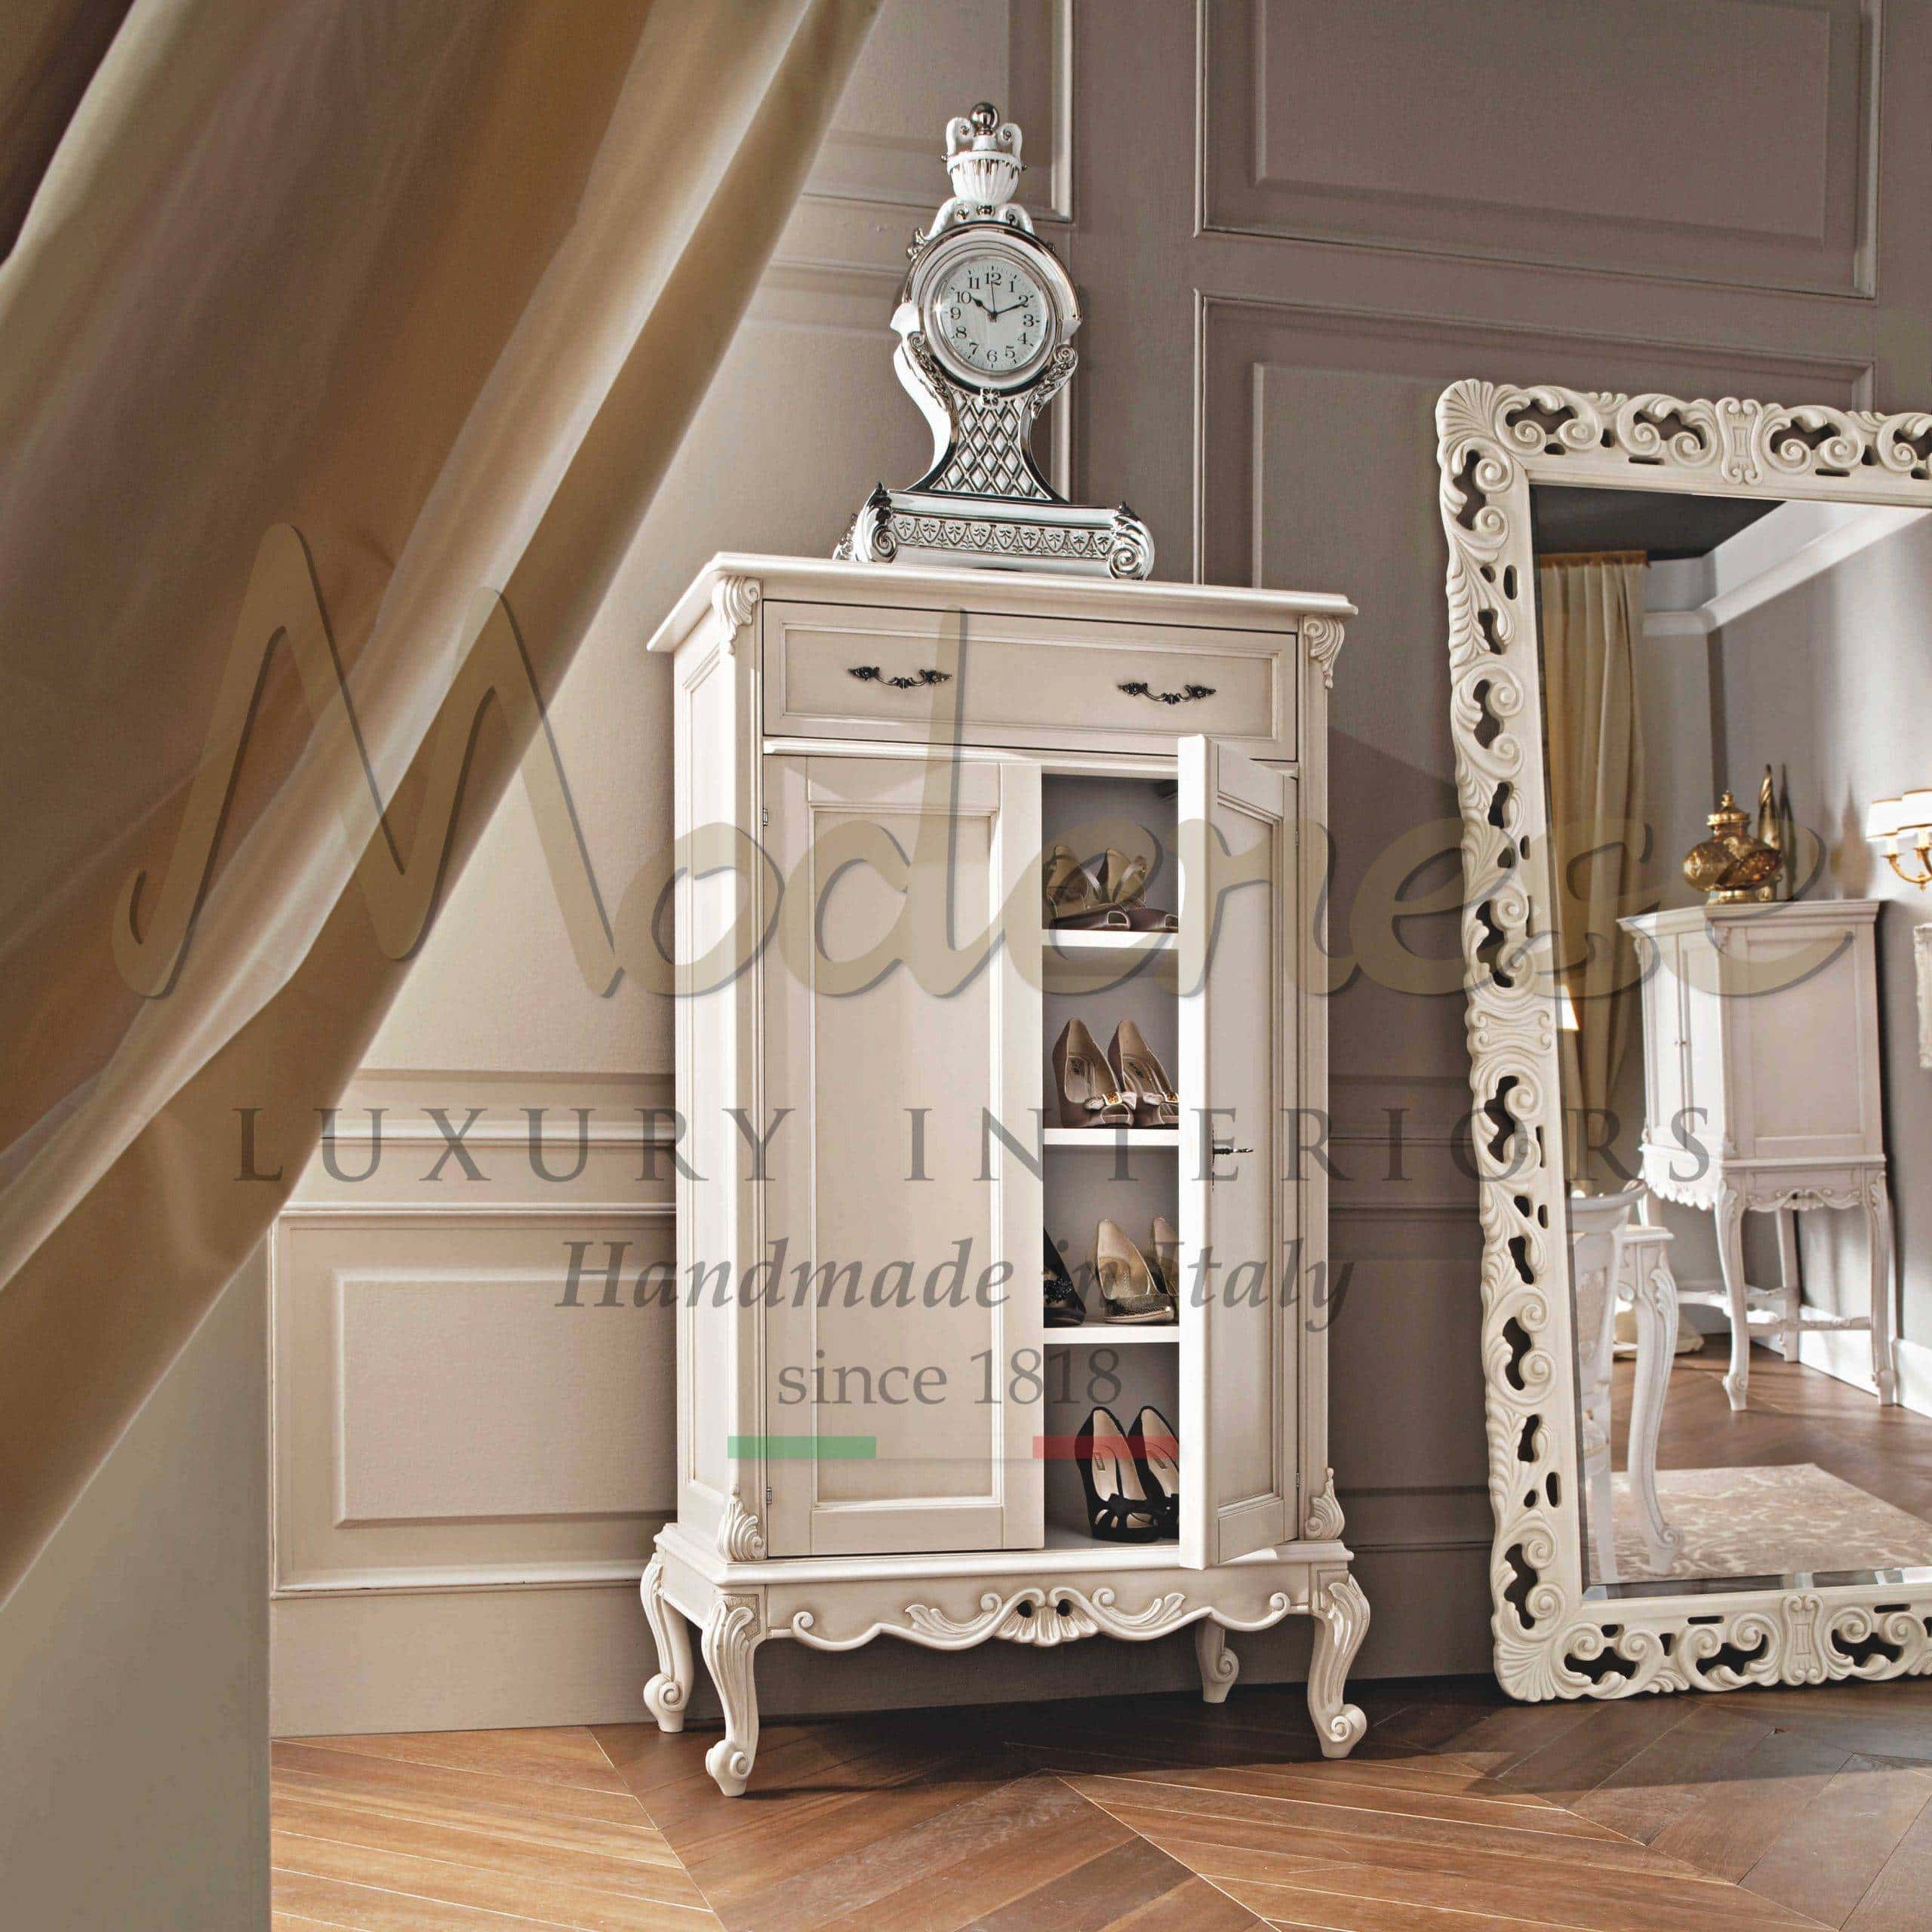 Psyché 45x130cm Or Mustdunet Miroir Matériau et Design Premium Shabby Chic Miroir Baroque orné Confection Artisanale